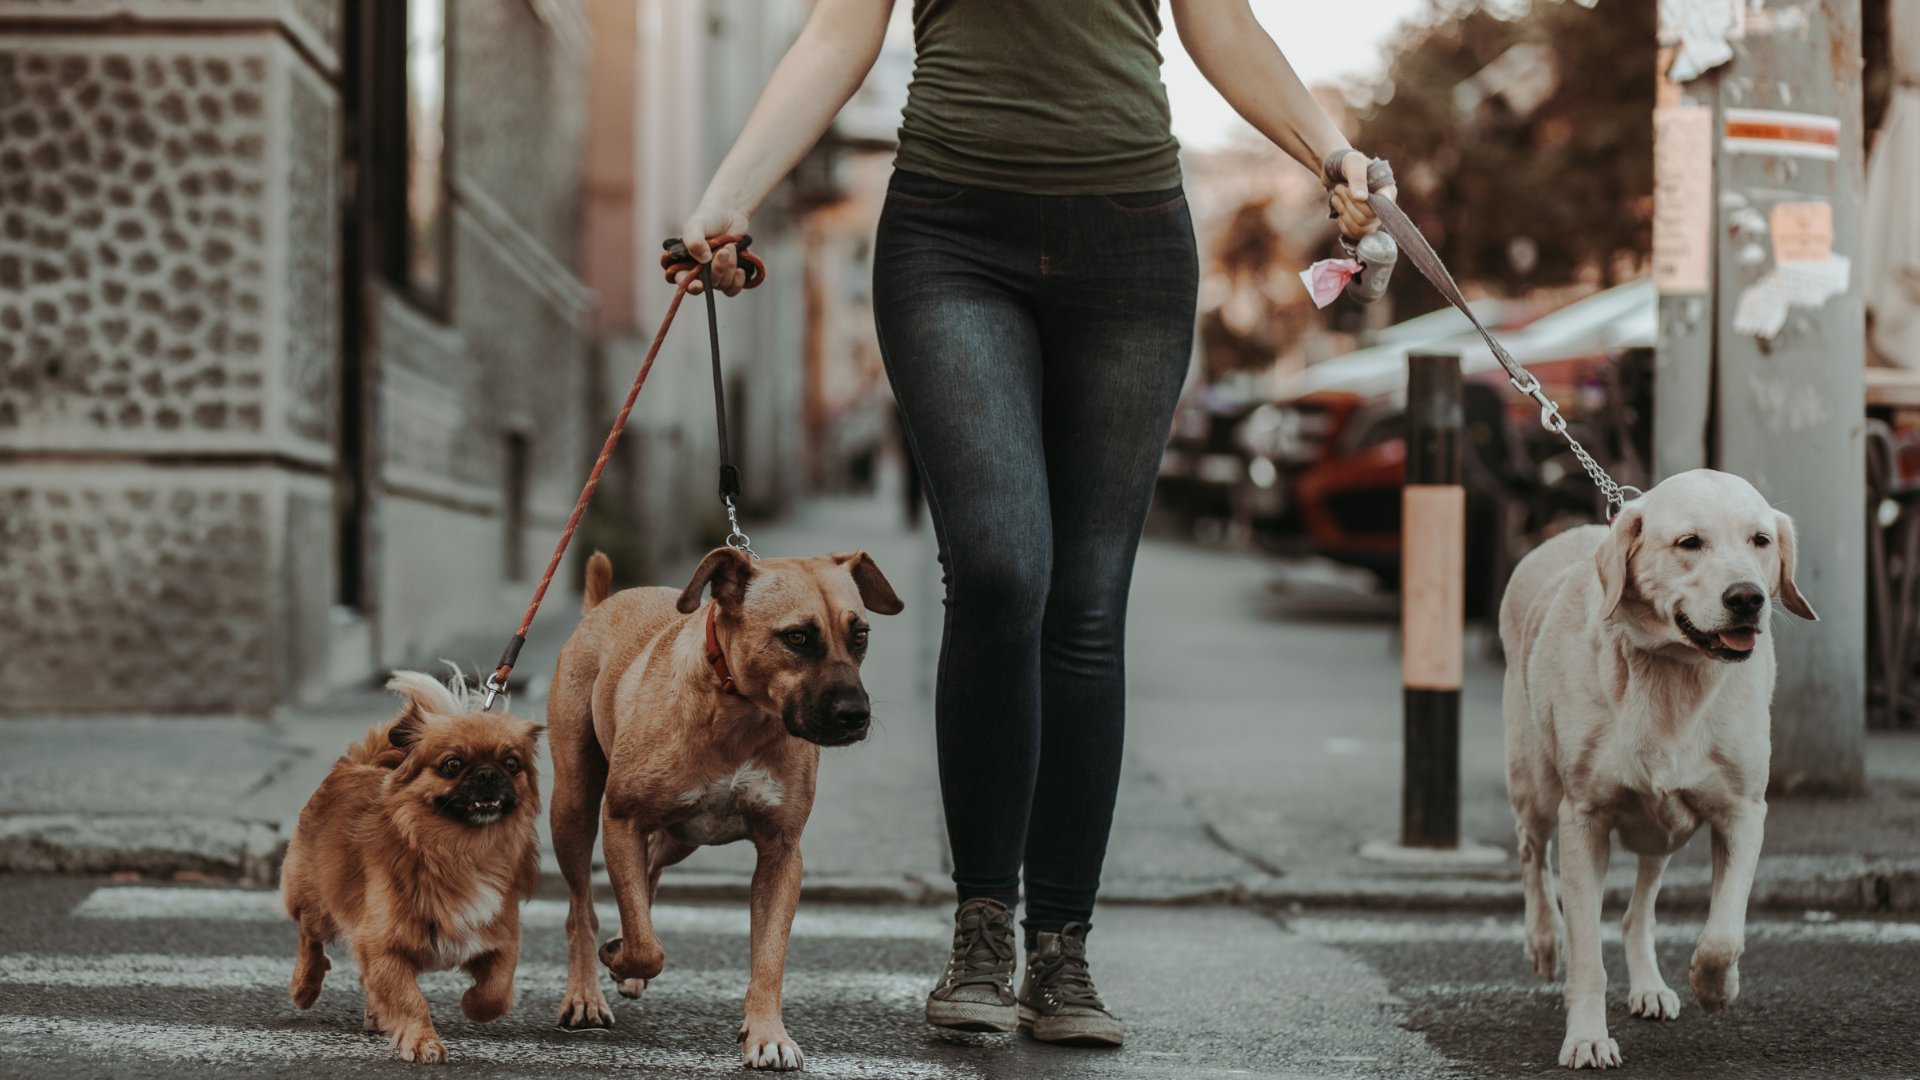 Uma mulher passeando com alguns cachorros numa rua.